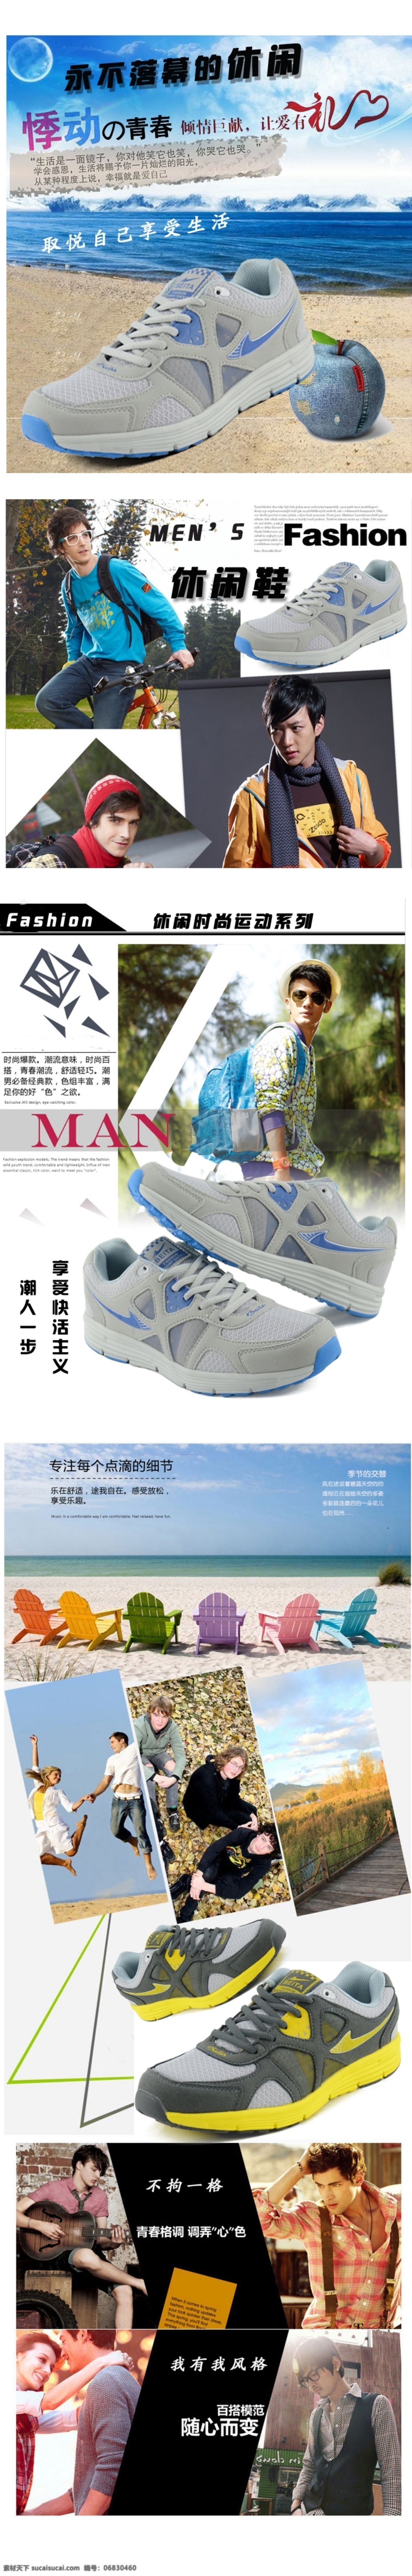 淘宝 天猫 男鞋描述 描述 淘宝素材 淘宝设计 淘宝模板下载 白色